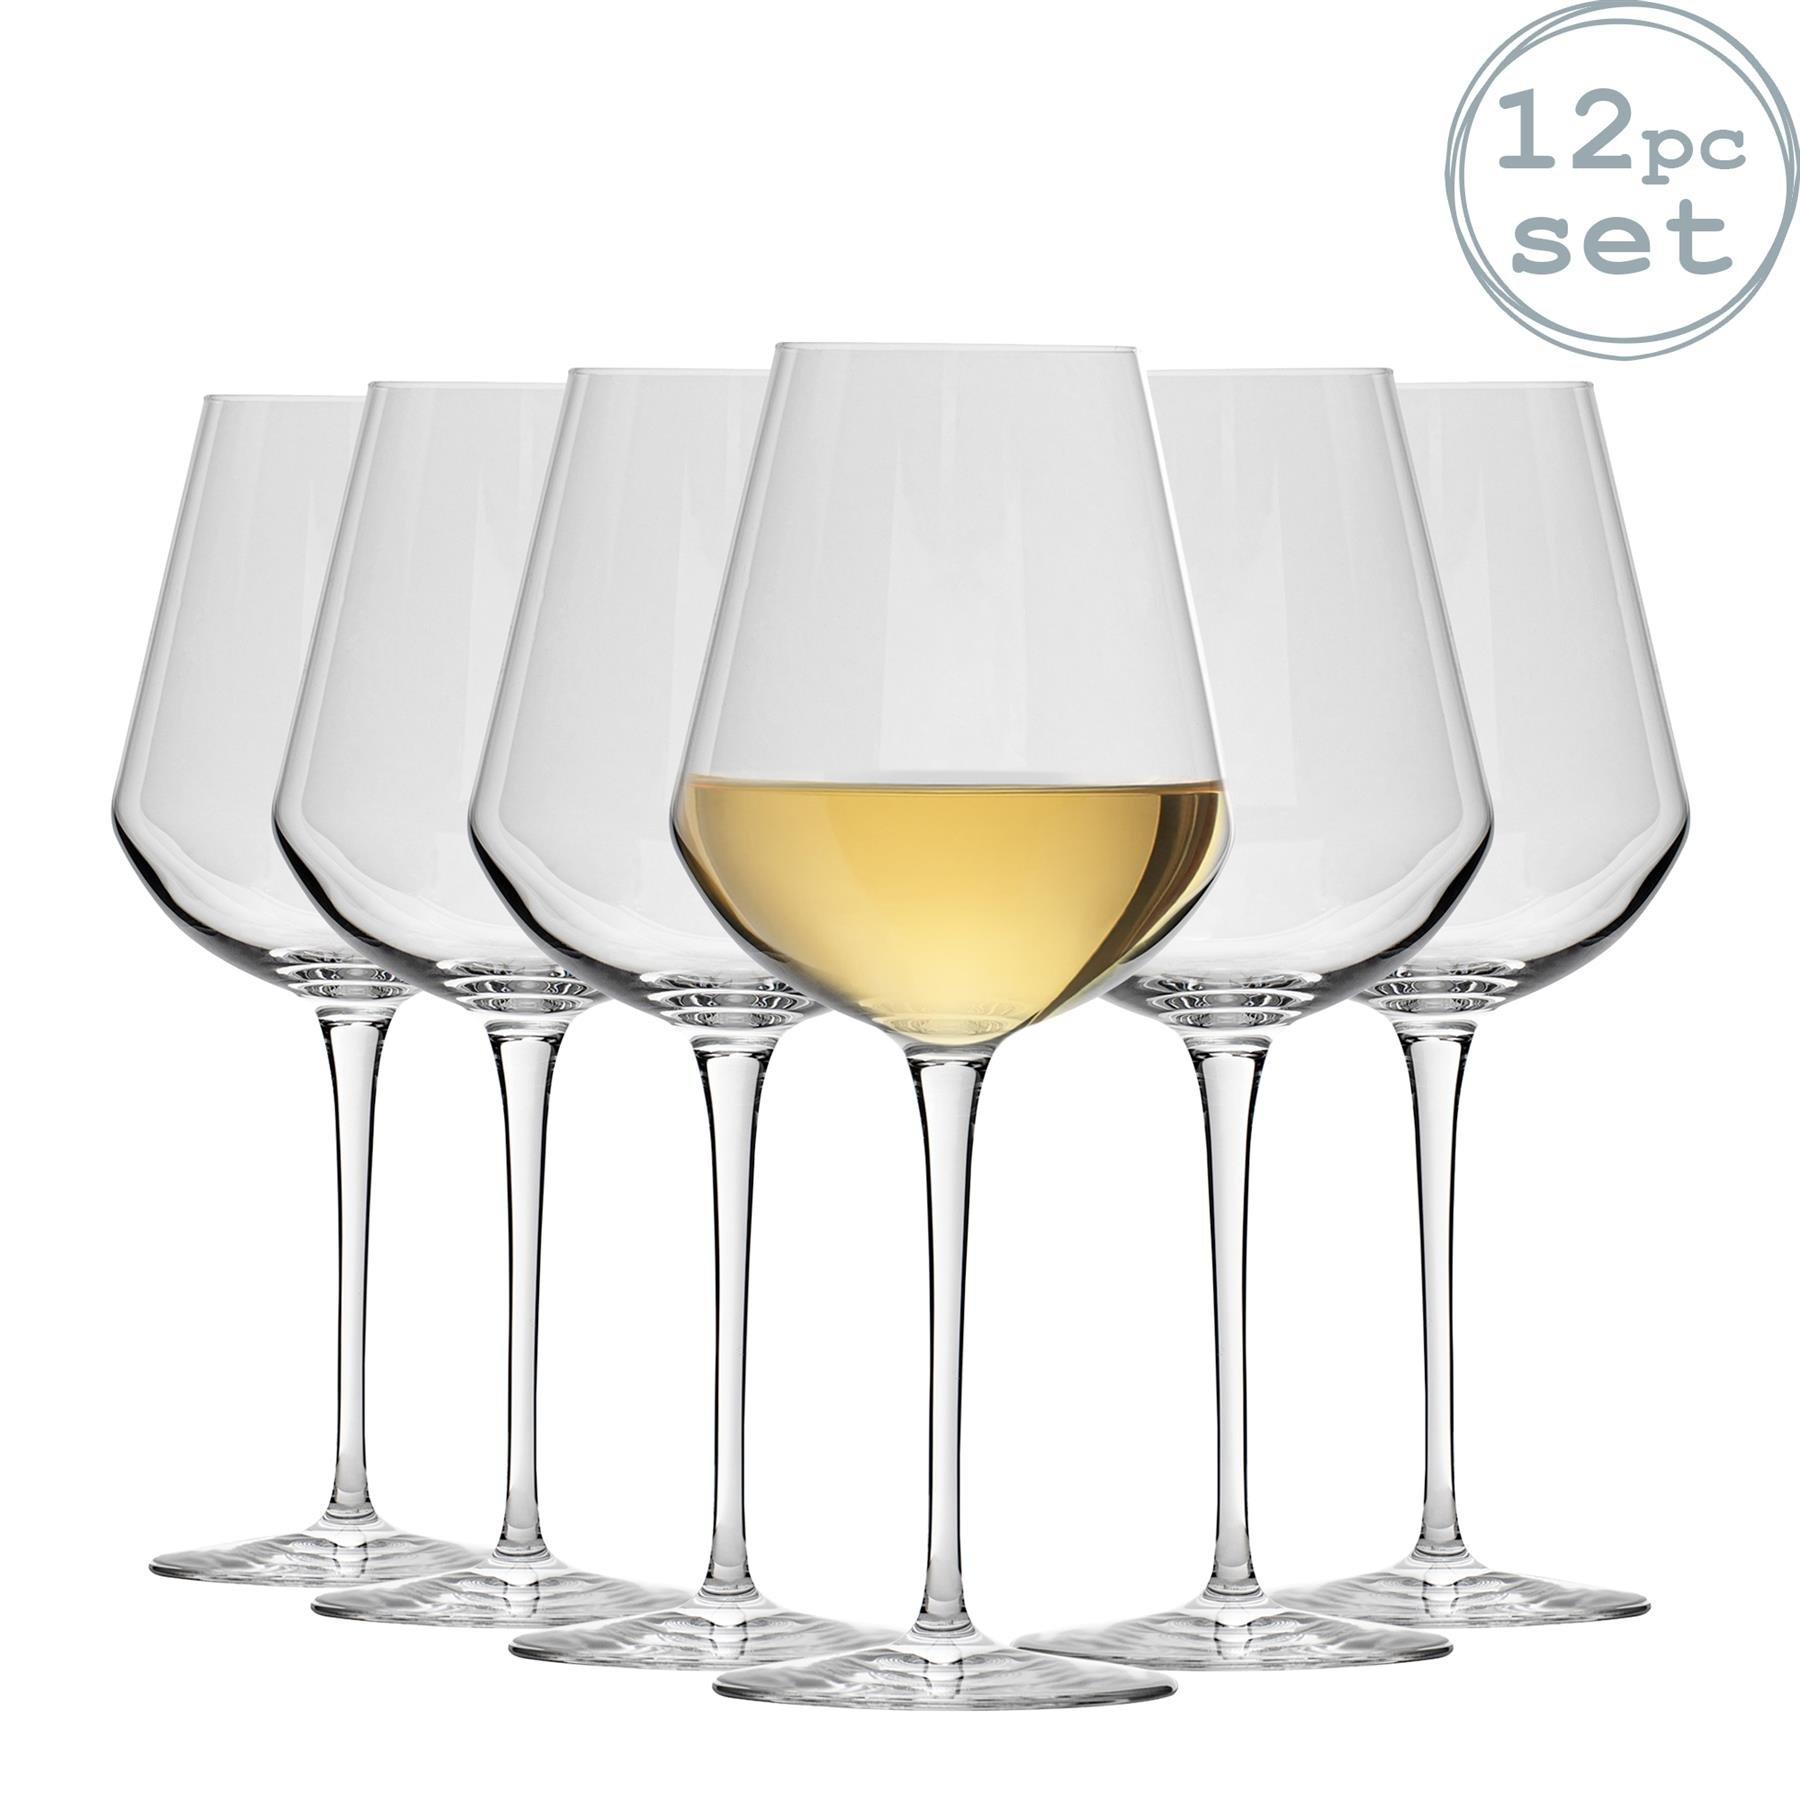 Inalto Uno White Wine Glasses - 470ml - Pack of 12